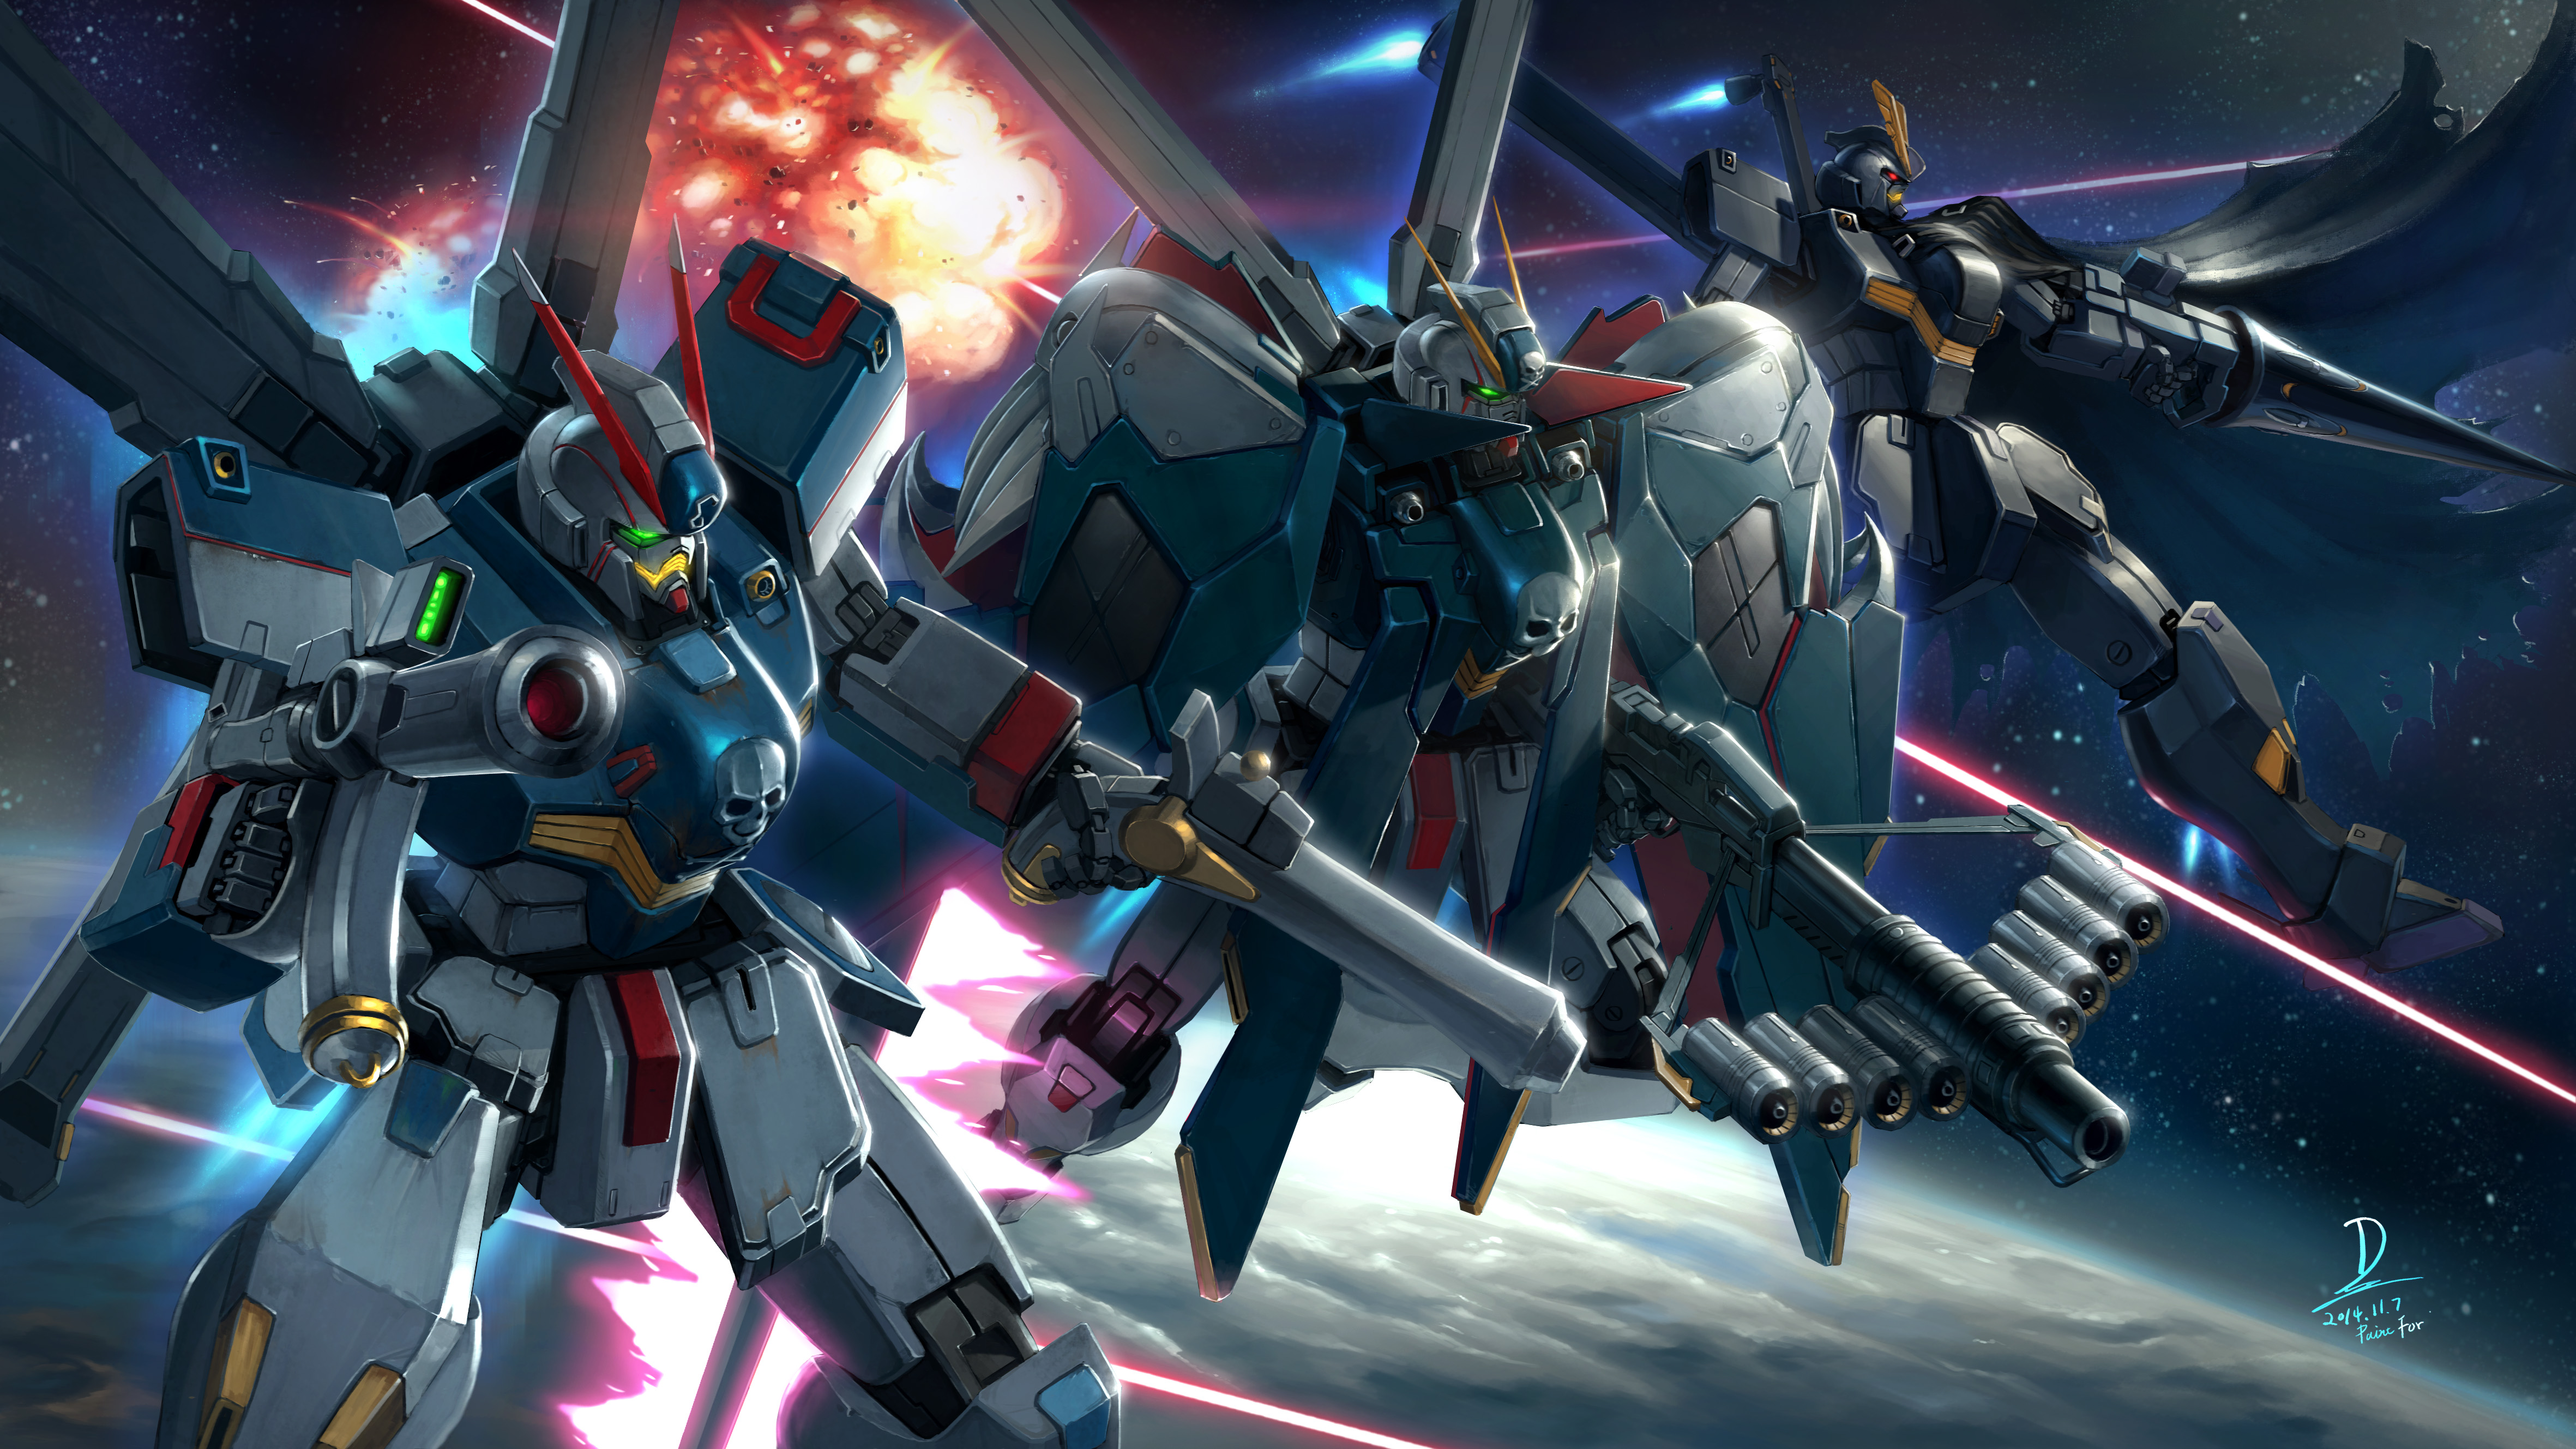 Anime Mechs Super Robot Taisen Mobile Suit Crossbone Gundam Gundam Artwork Digital Art Fan Art Cross 4724x2657